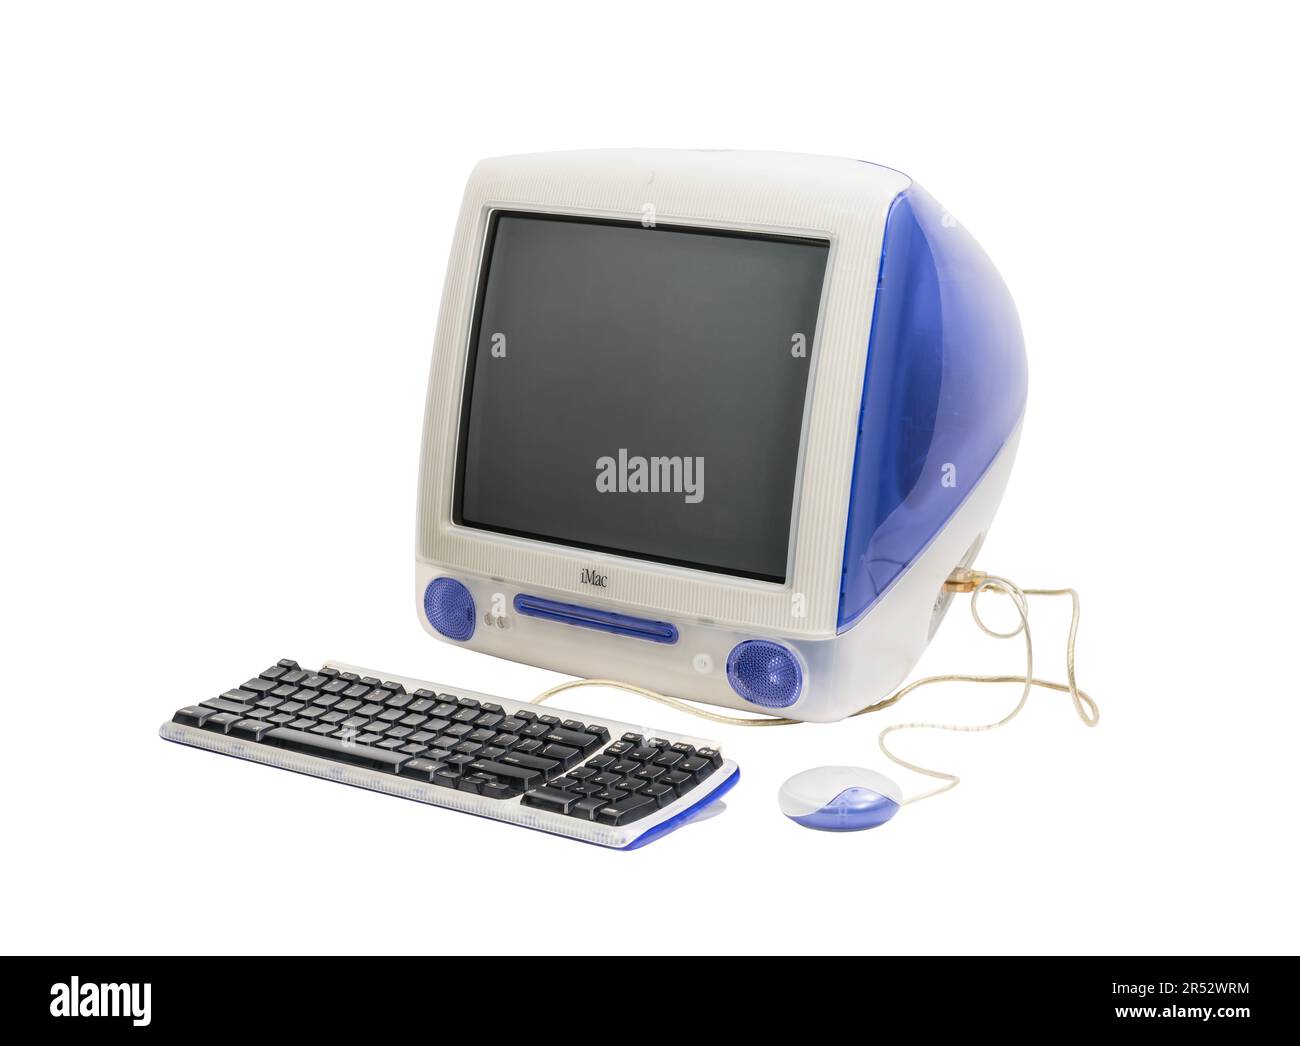 Los Angeles, California, USA - 29 maggio 2023: Fotografia editoriale illustrativa del computer desktop Apple iMac G3 vintage con tastiera e mouse. Foto Stock